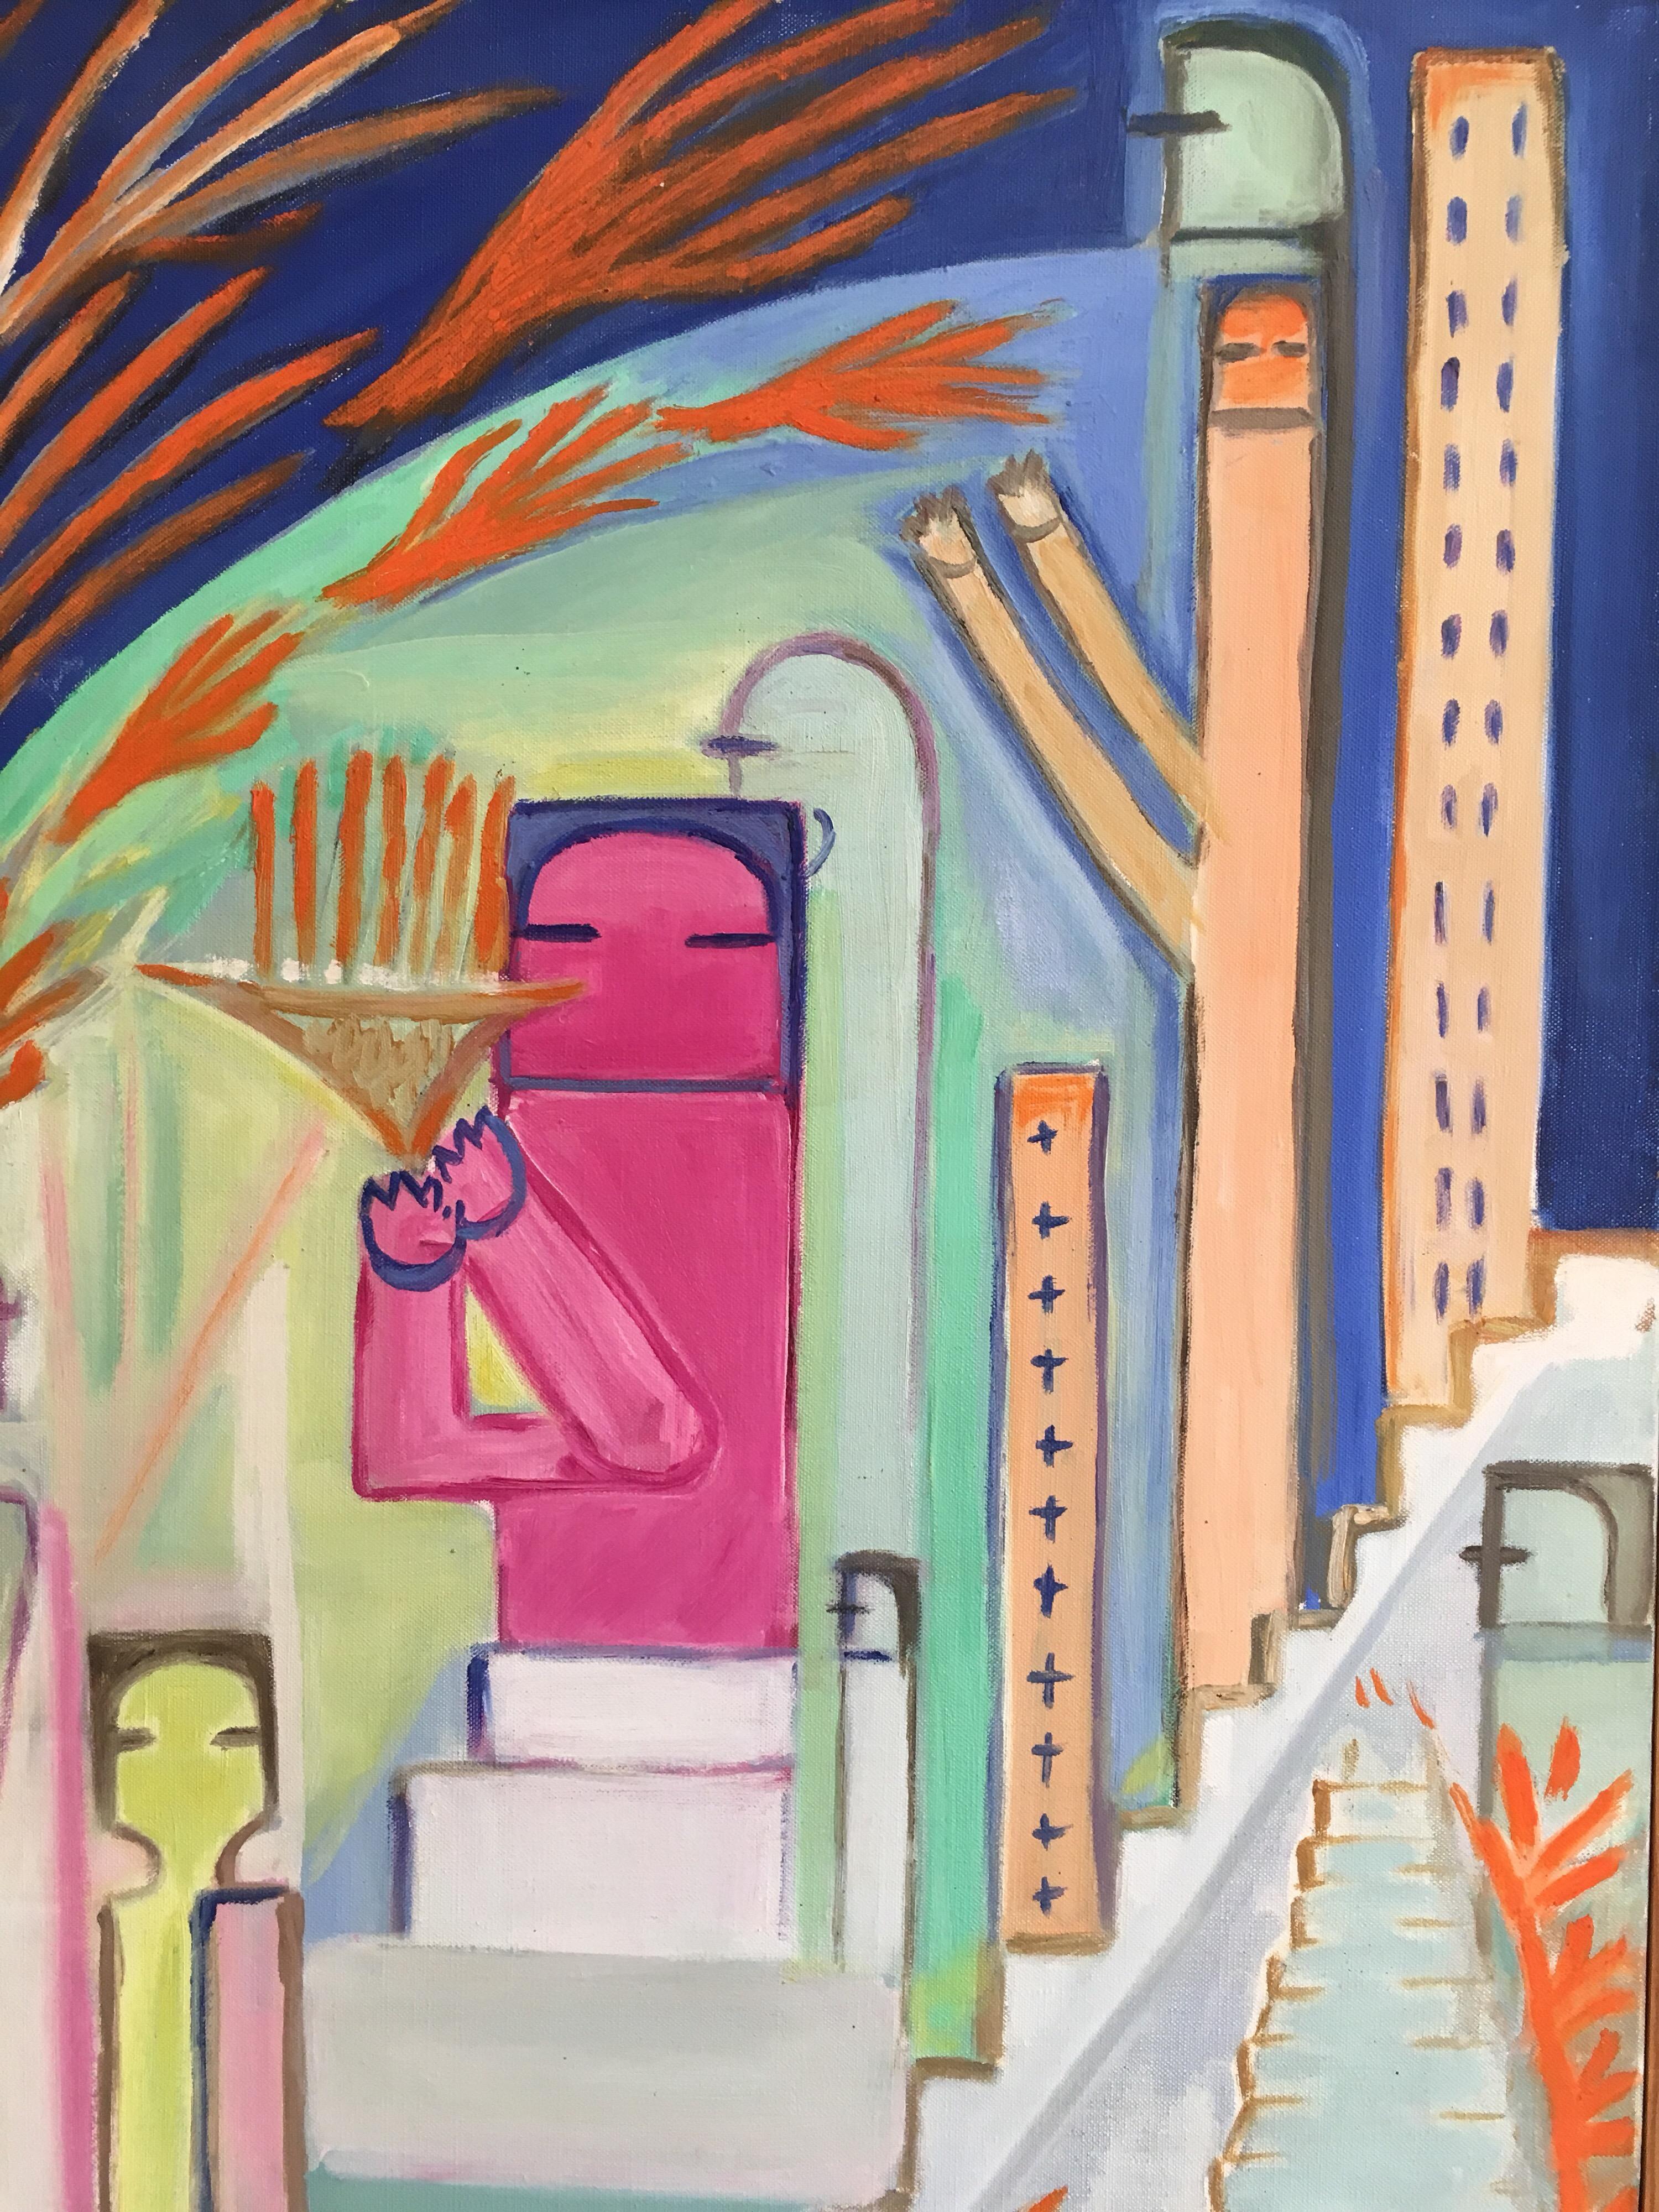 ville', peinture à l'huile abstraite surréaliste, signée
Par l'artiste Suzanne Vattier, française 1901-1996
Signé par l'artiste dans le coin inférieur droit
Signé et daté 